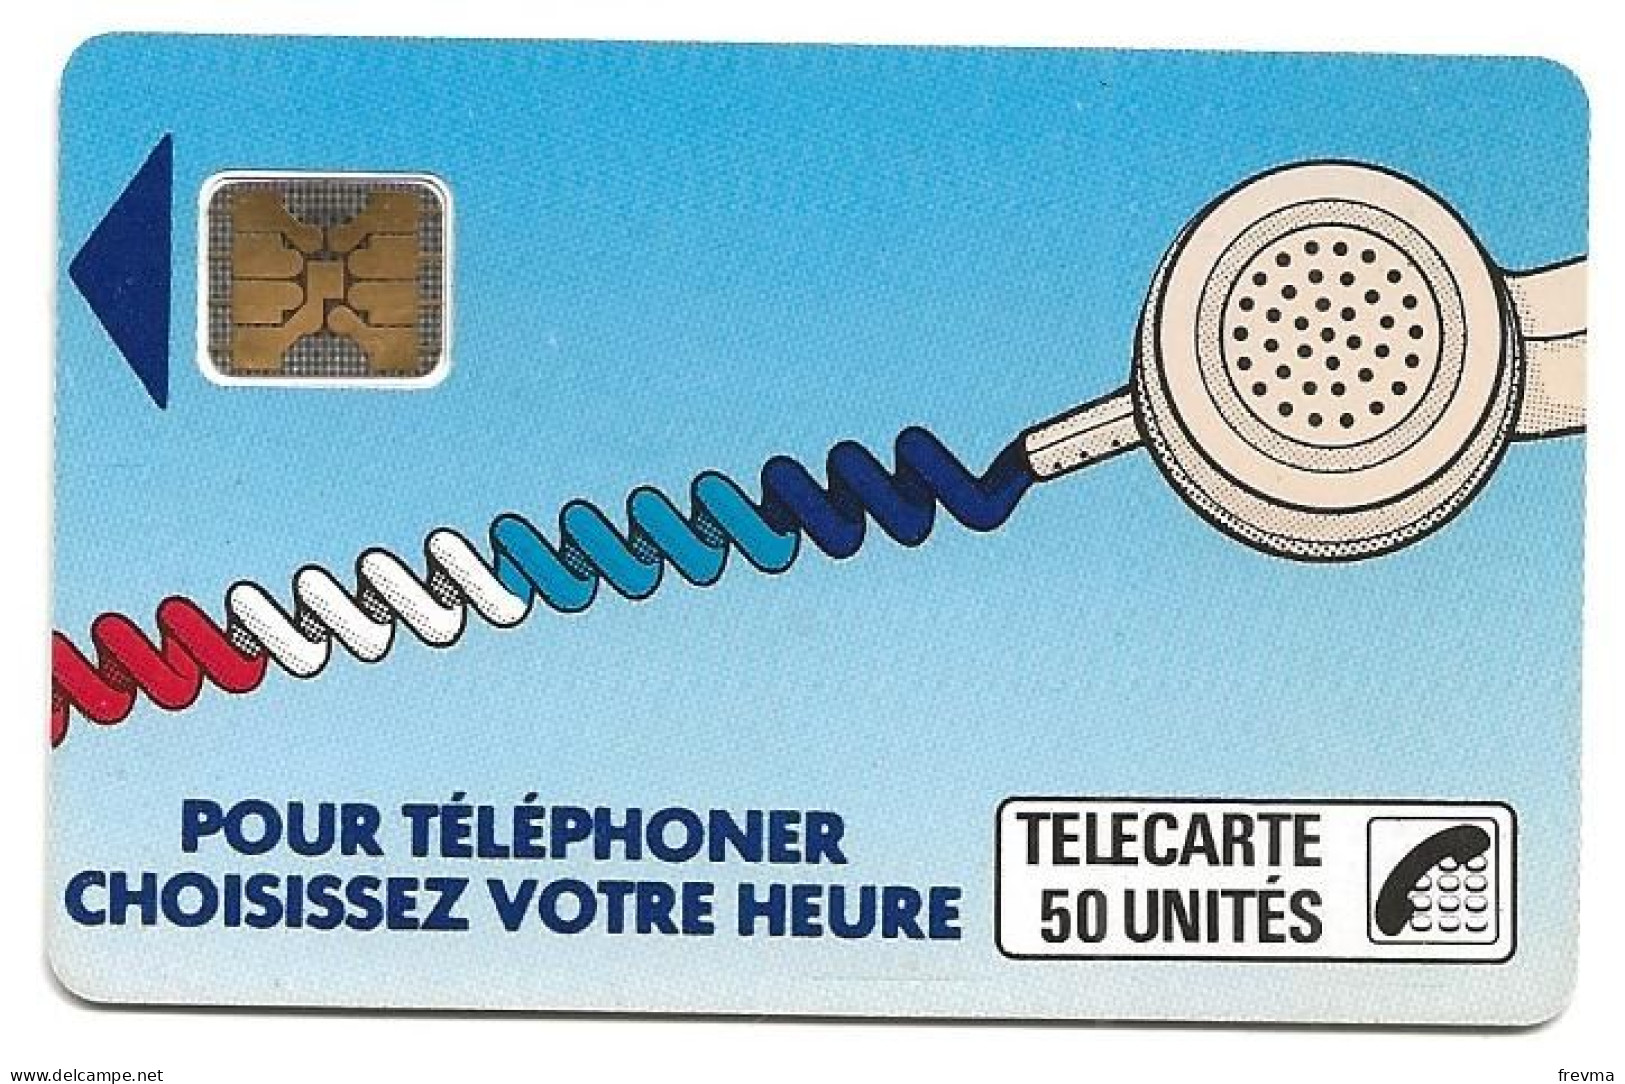 Telecarte K 9 50 Unités SC4on - Telefonschnur (Cordon)